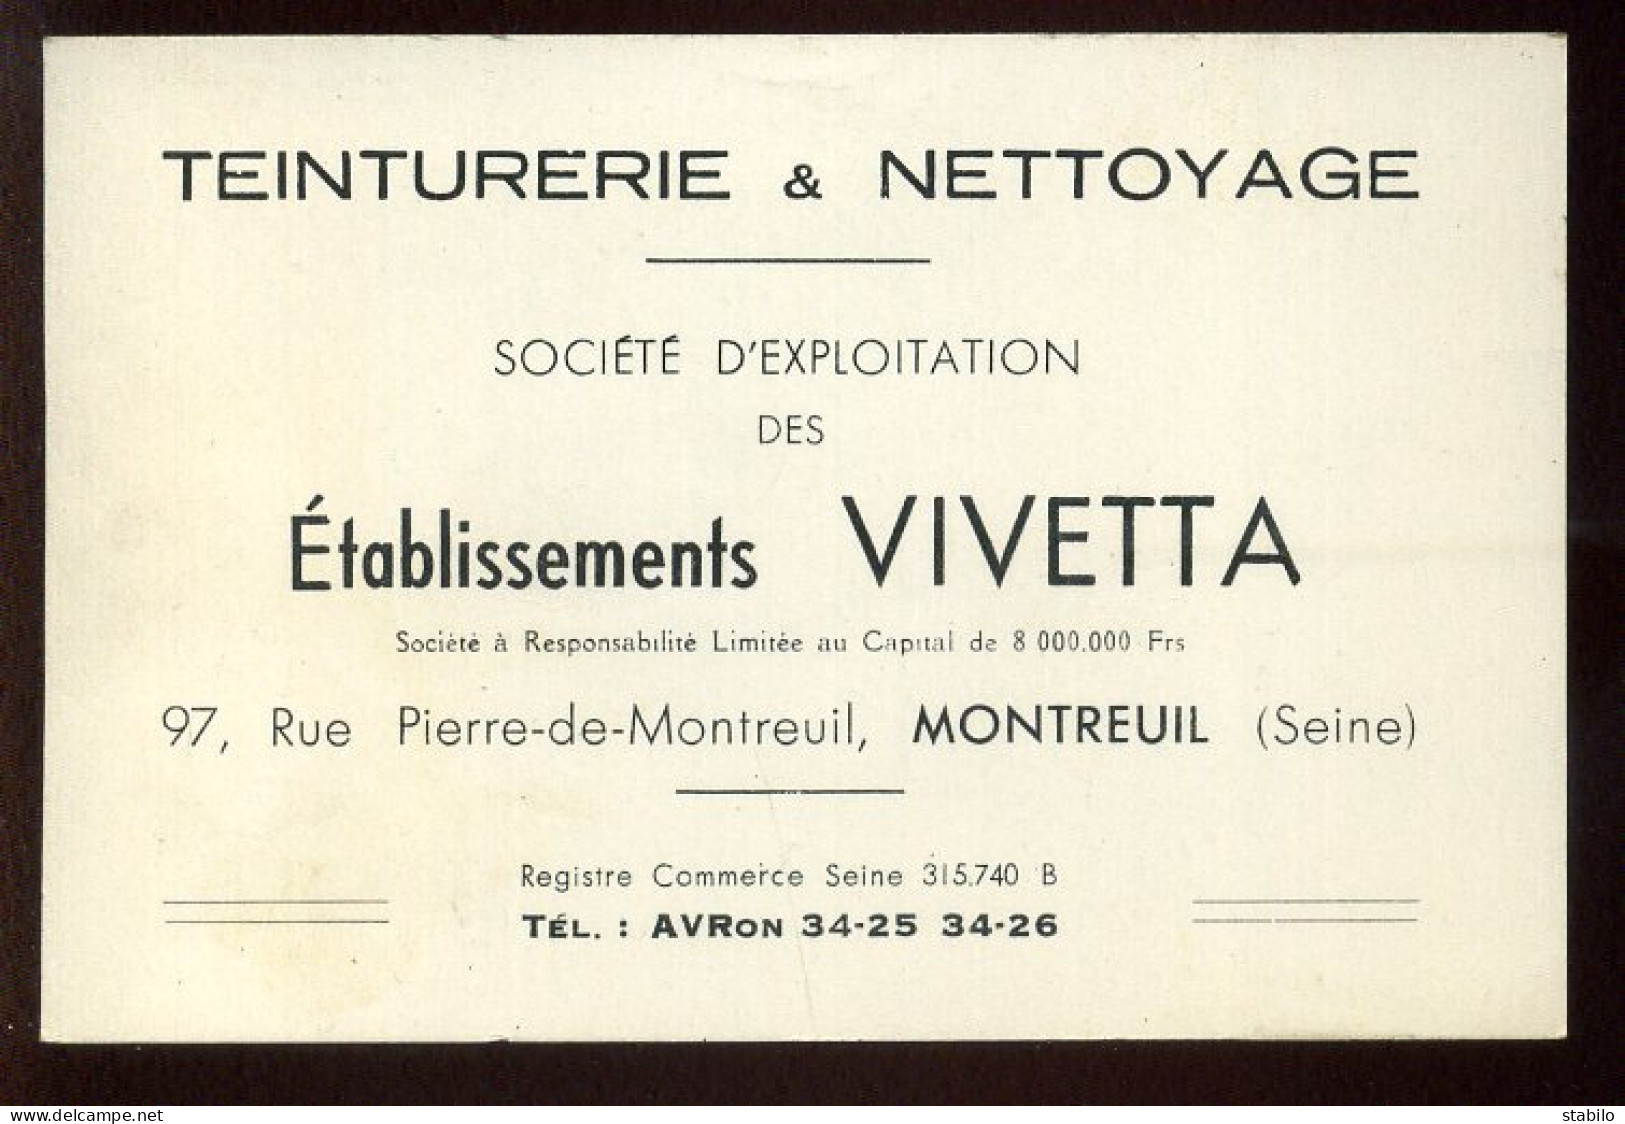 CARTE DE VISITE - TEINTURERIE VIVETTA, 97 RUE P.DE.MONTREUIL, MONTREUIL (SEINE-ST-DENIS) - Visiting Cards